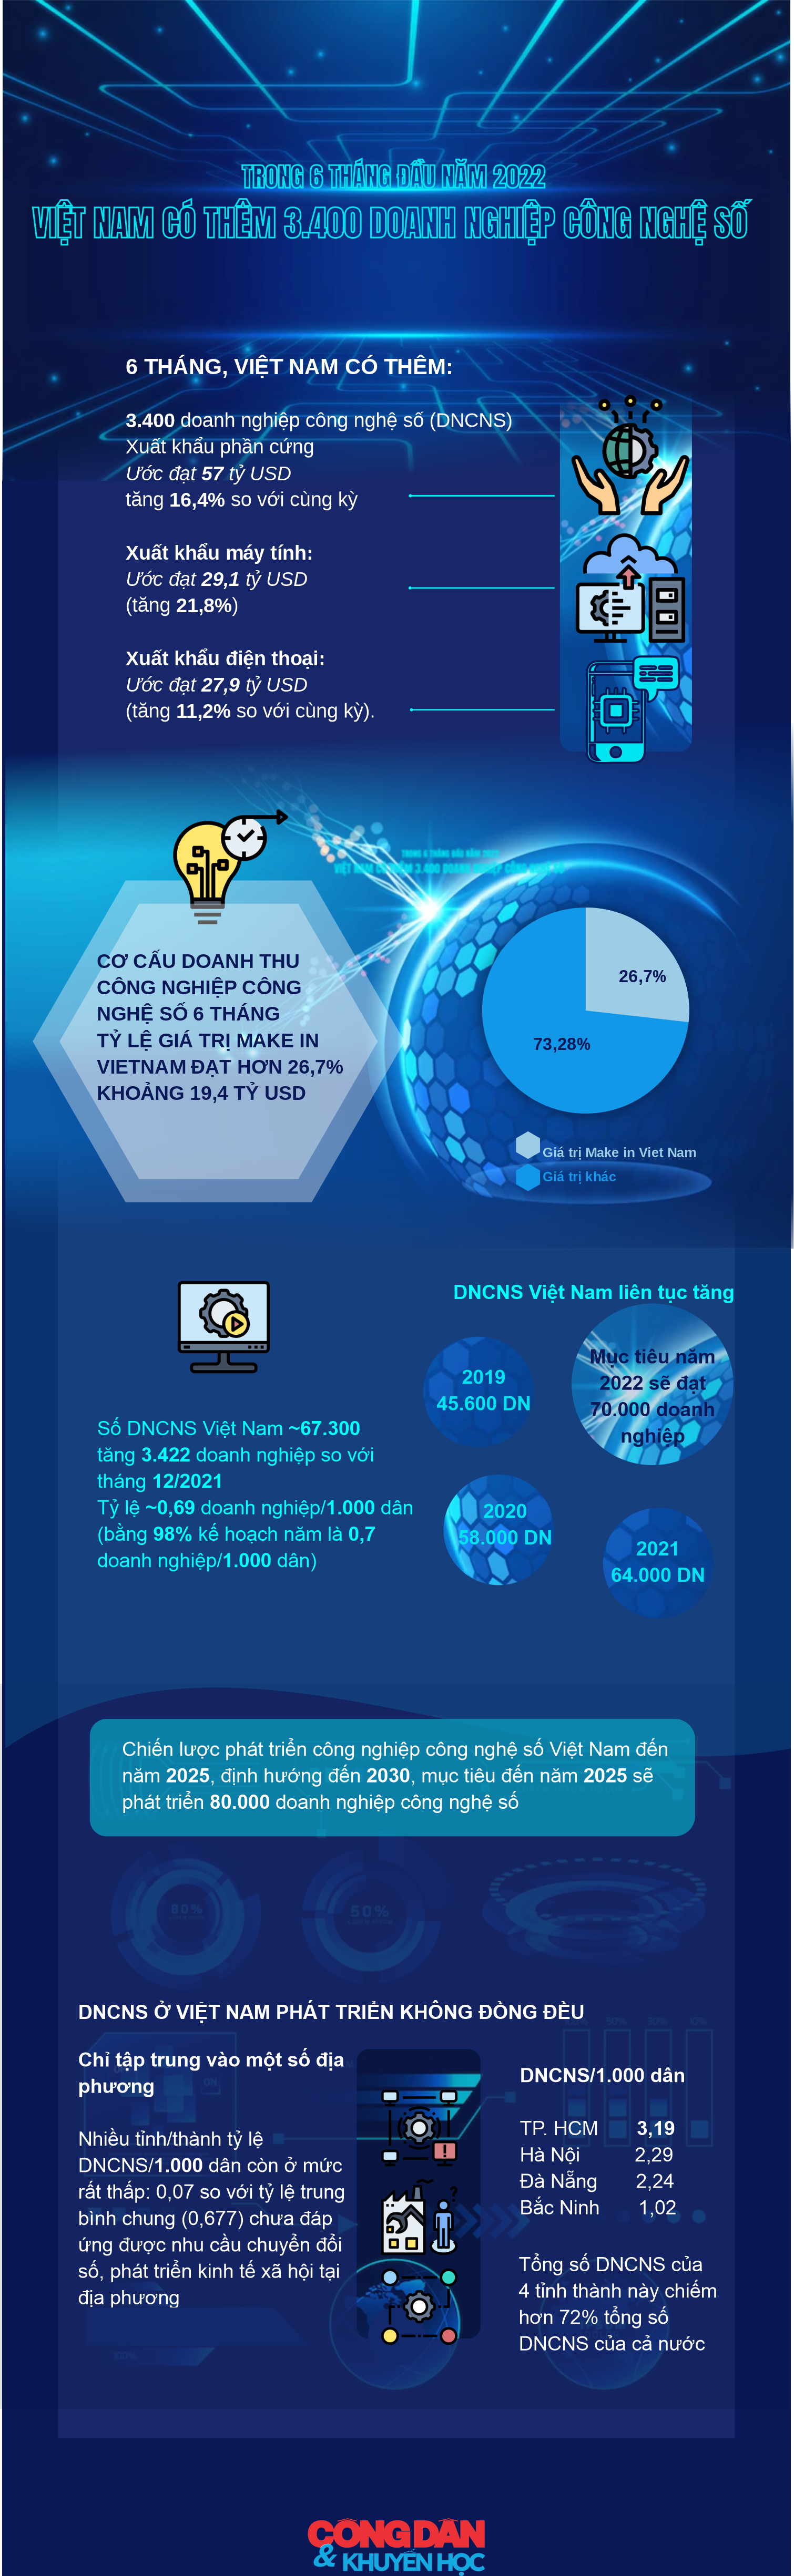 [Infographic] 6 tháng đầu năm, Việt Nam có thêm 3.400 doanh nghiệp công nghệ số - Ảnh 1.